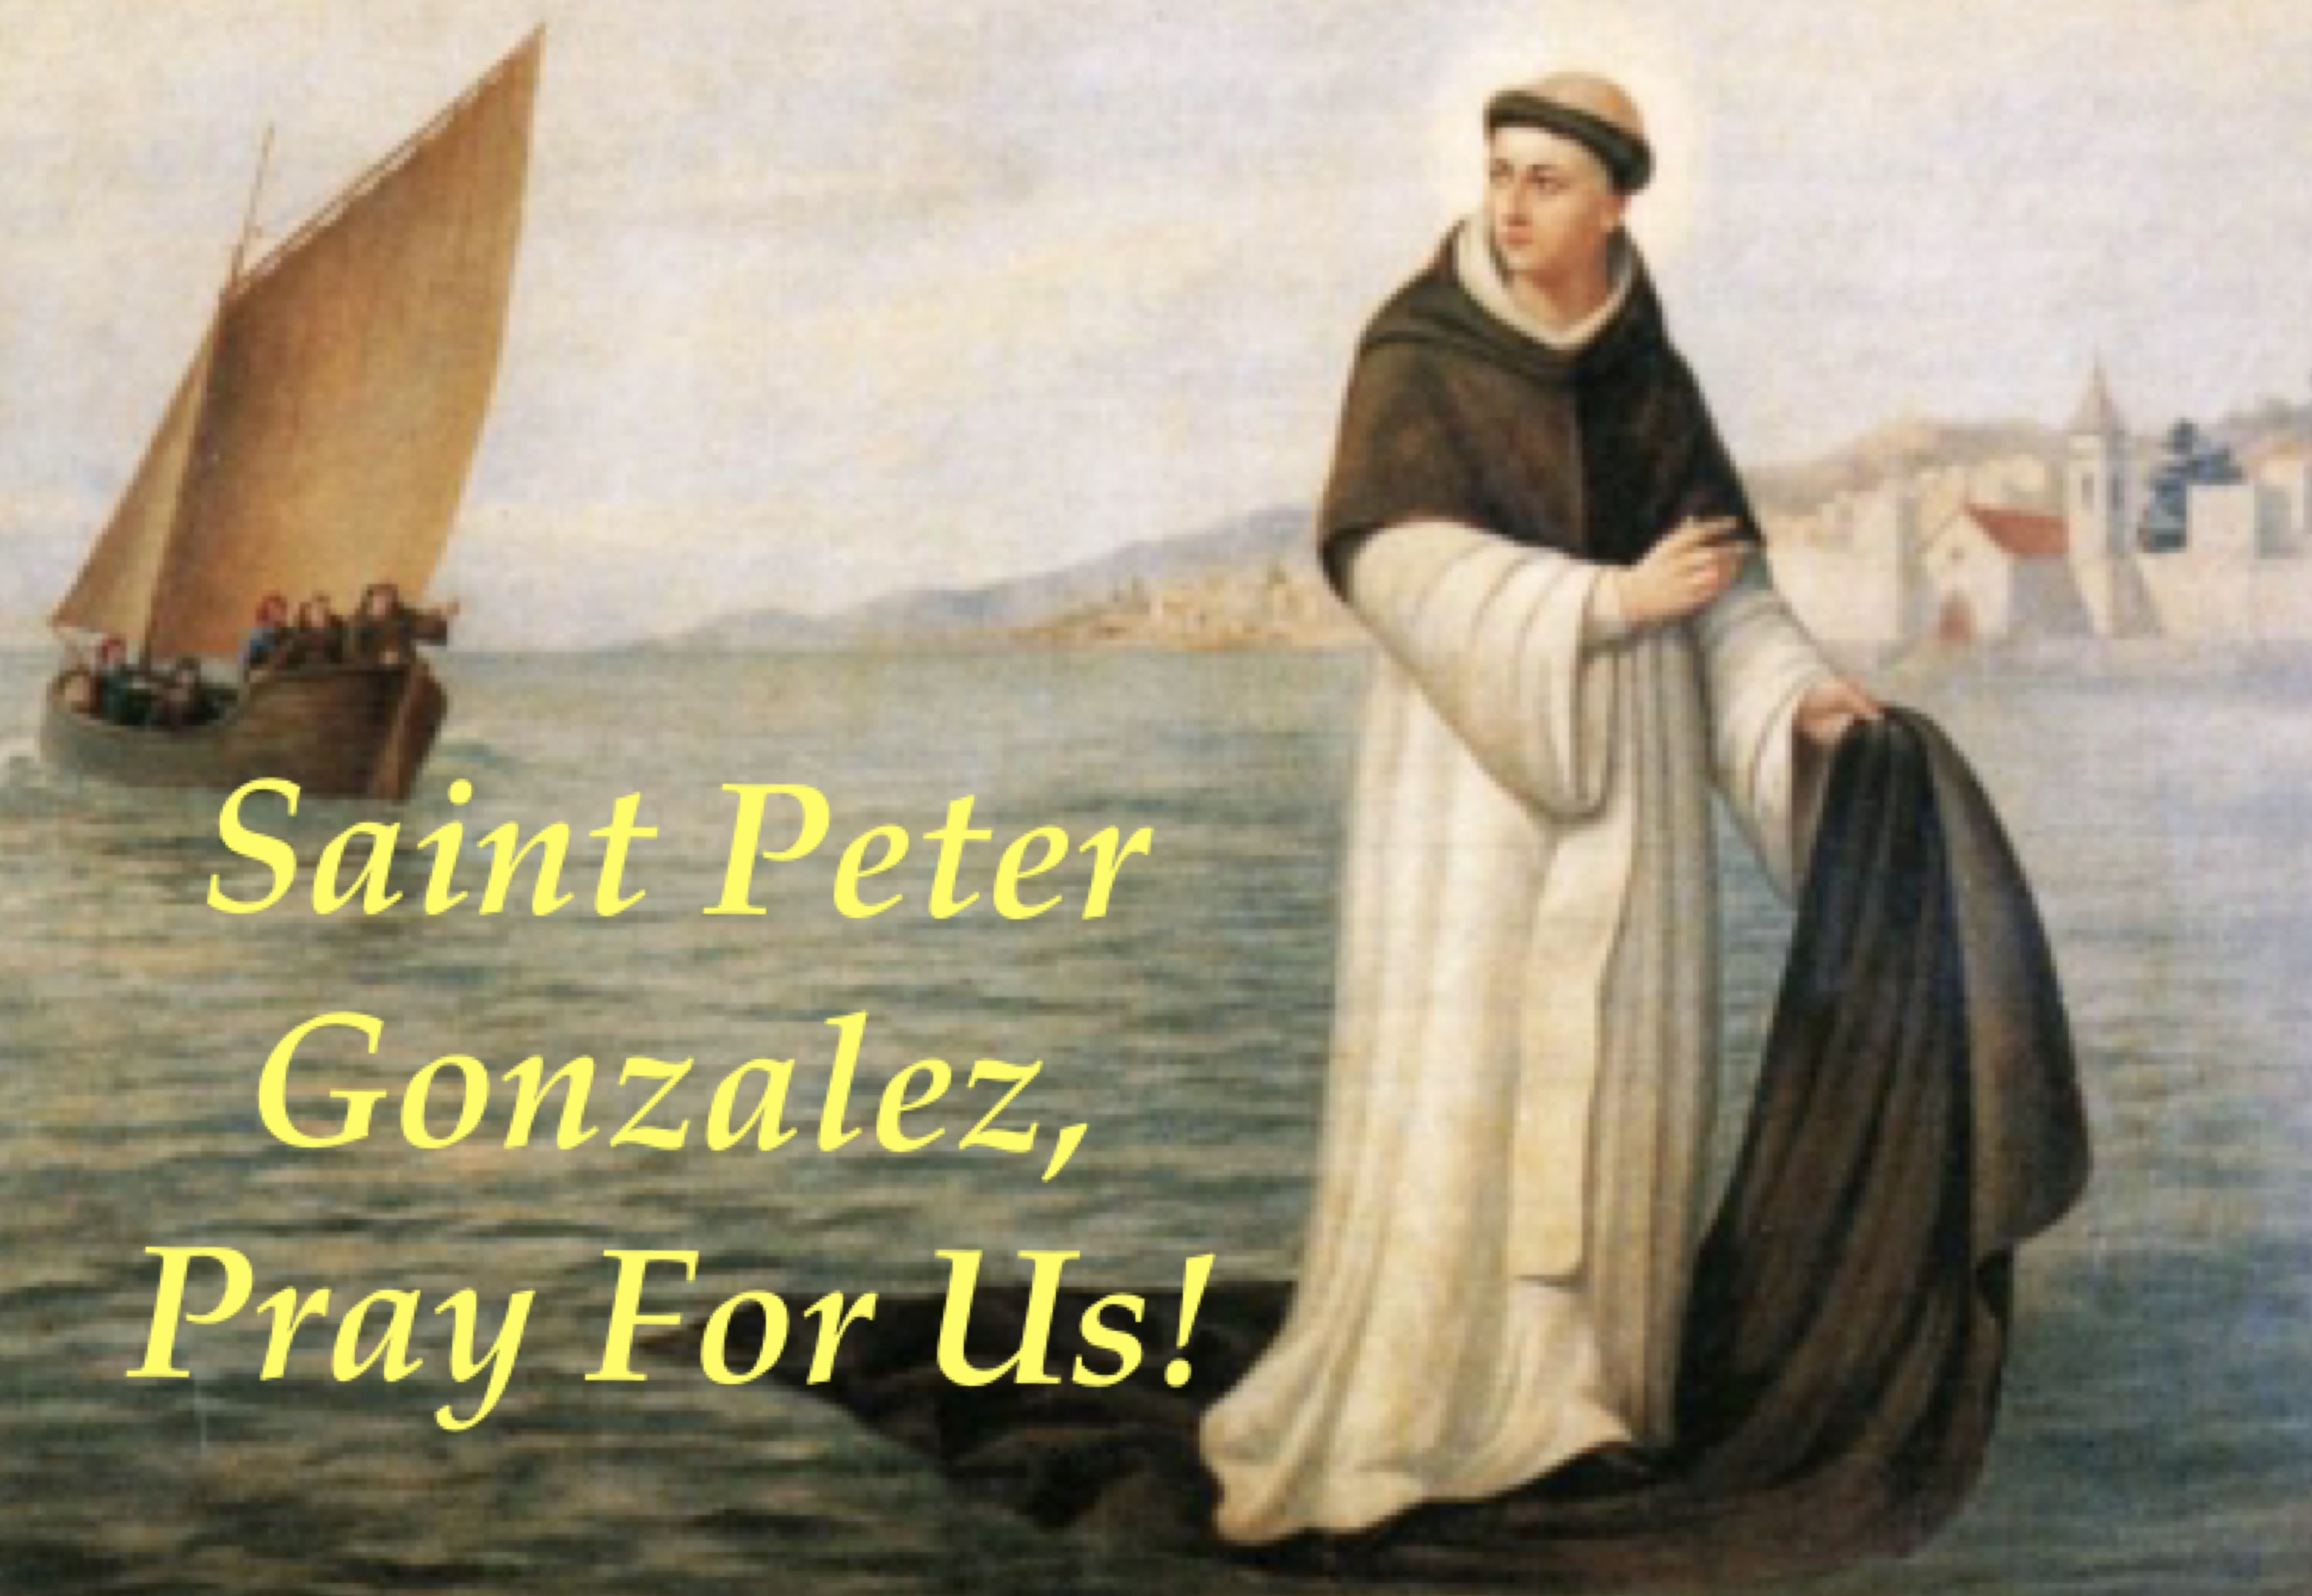 14th April - Saint Peter Gonzalez